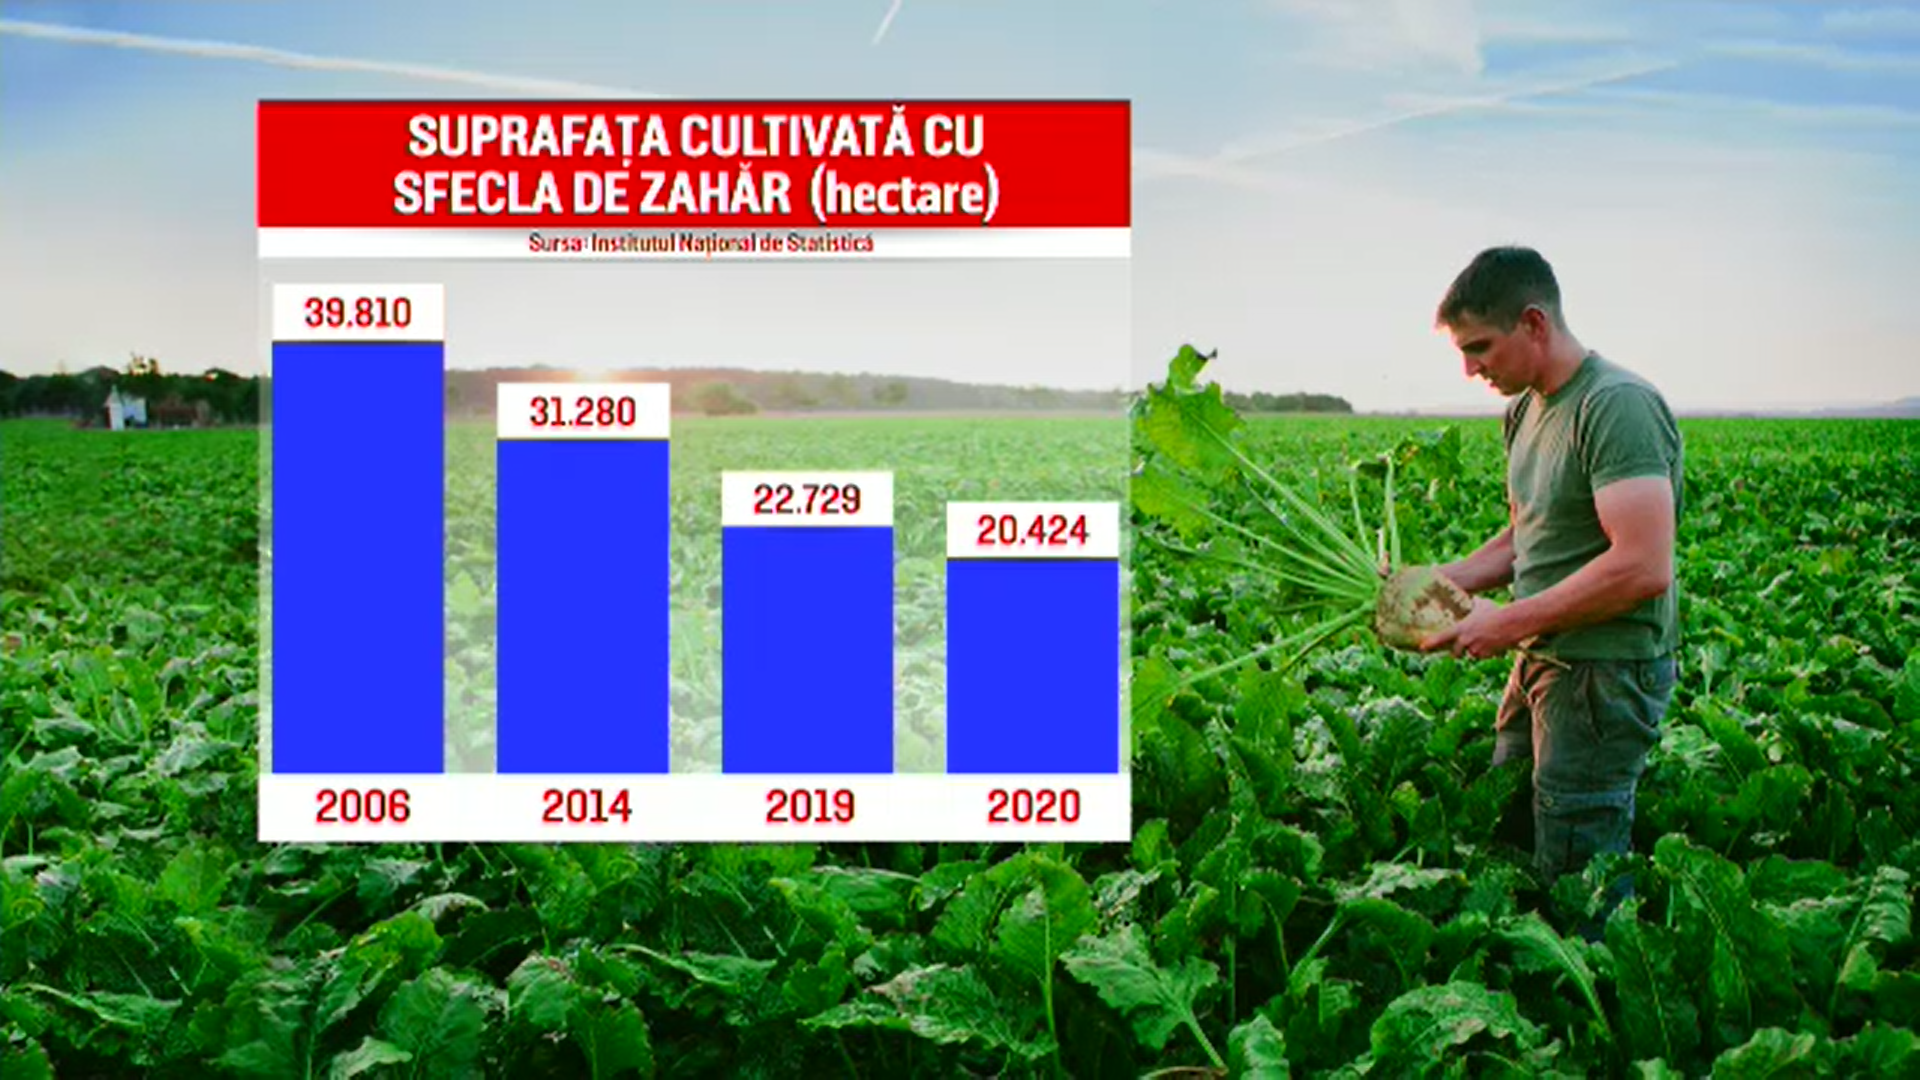 Sfecla de zahăr dispare de pe câmpurile din România. Recolta s-a redus la jumătate în ultimii ani